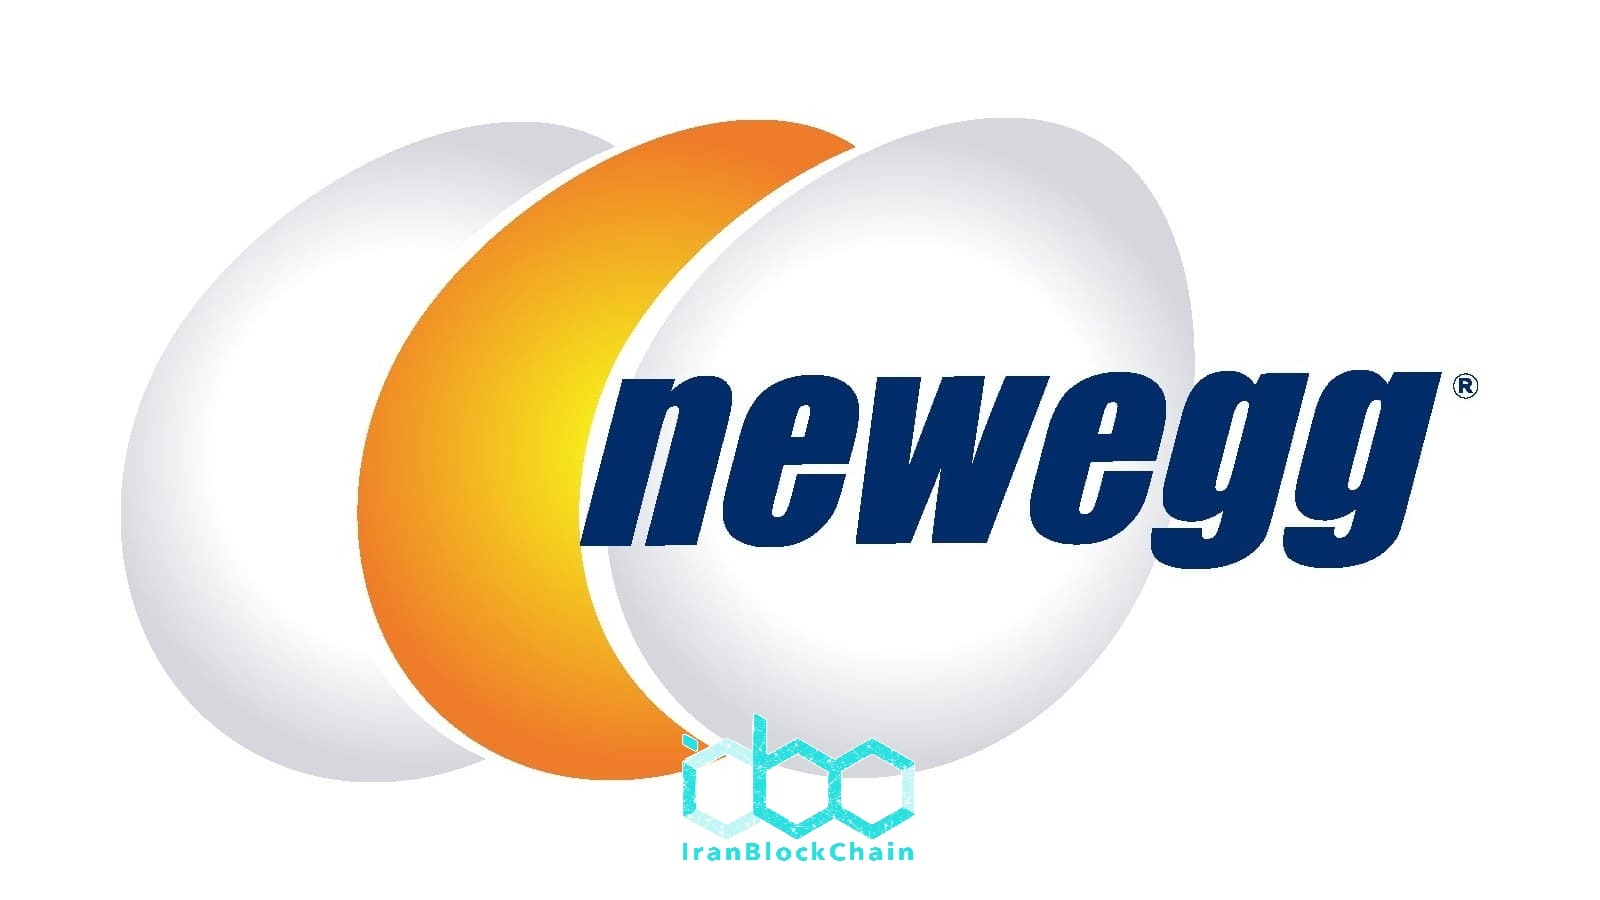 فروشگاه الکترونیکی Newegg اکنون Dogecoin را به عنوان پرداخت قبول می کند